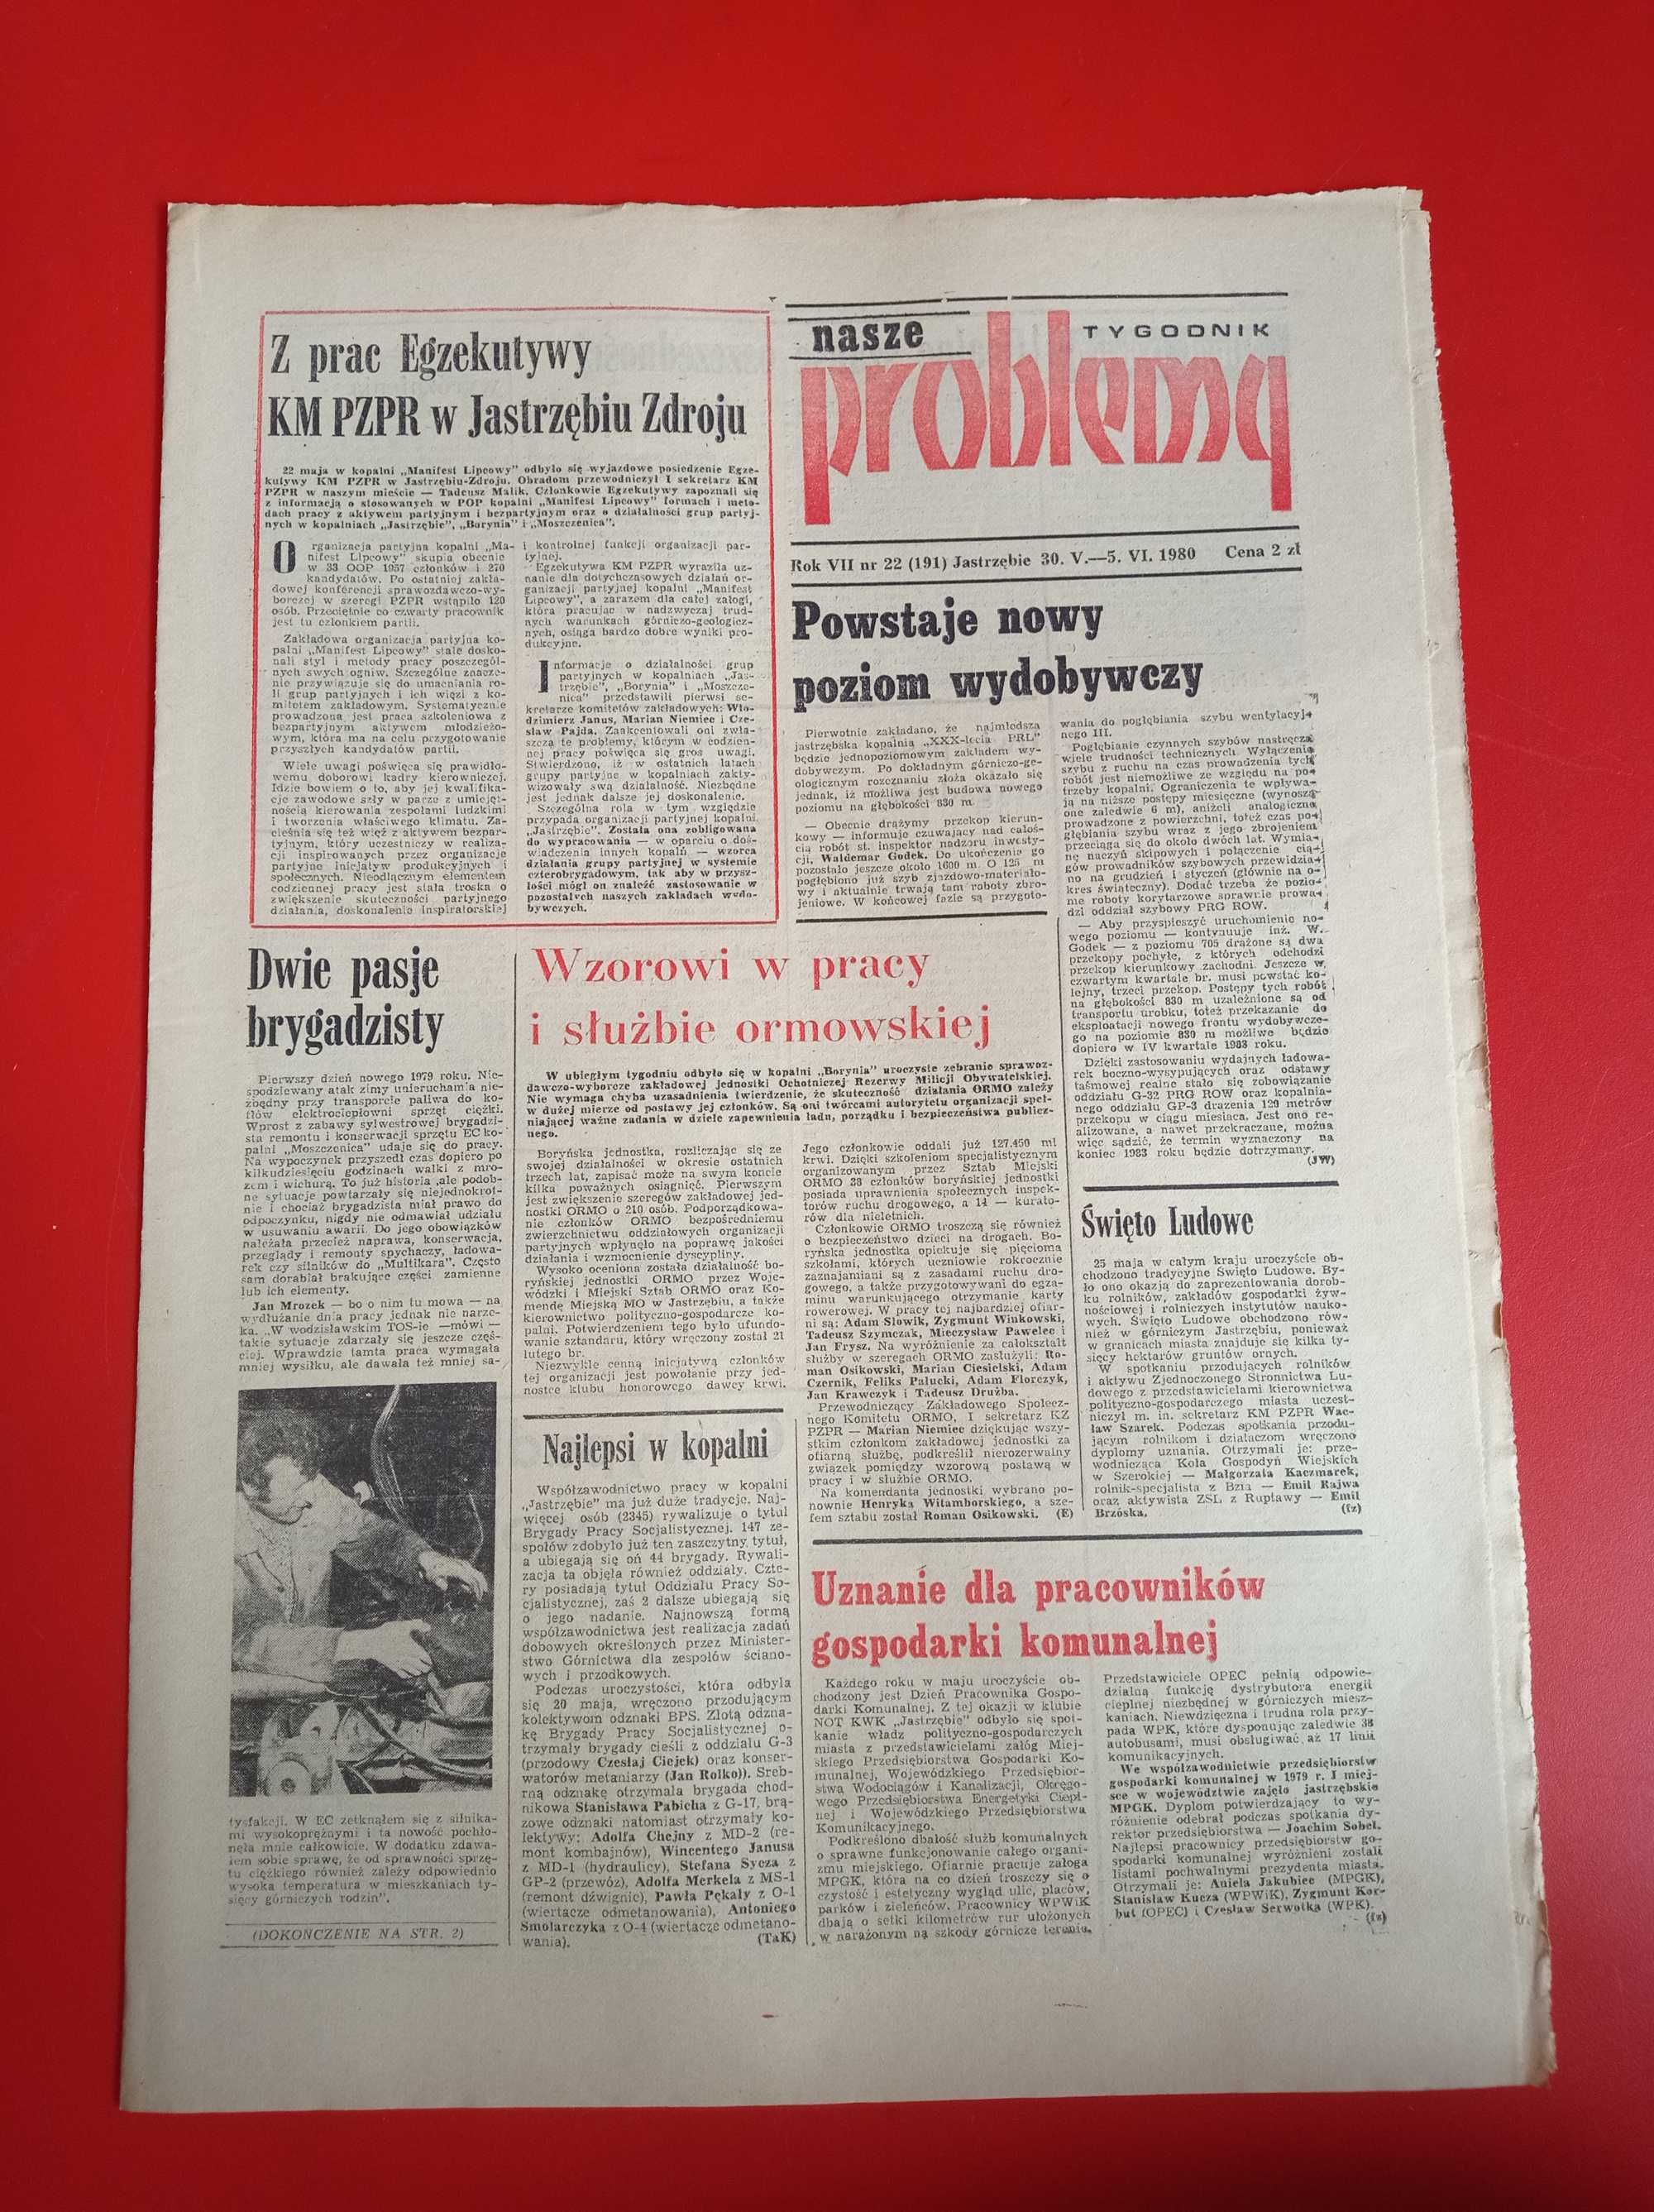 Nasze problemy, Jastrzębie, nr 22, 30 maja - 5 czerwca 1980